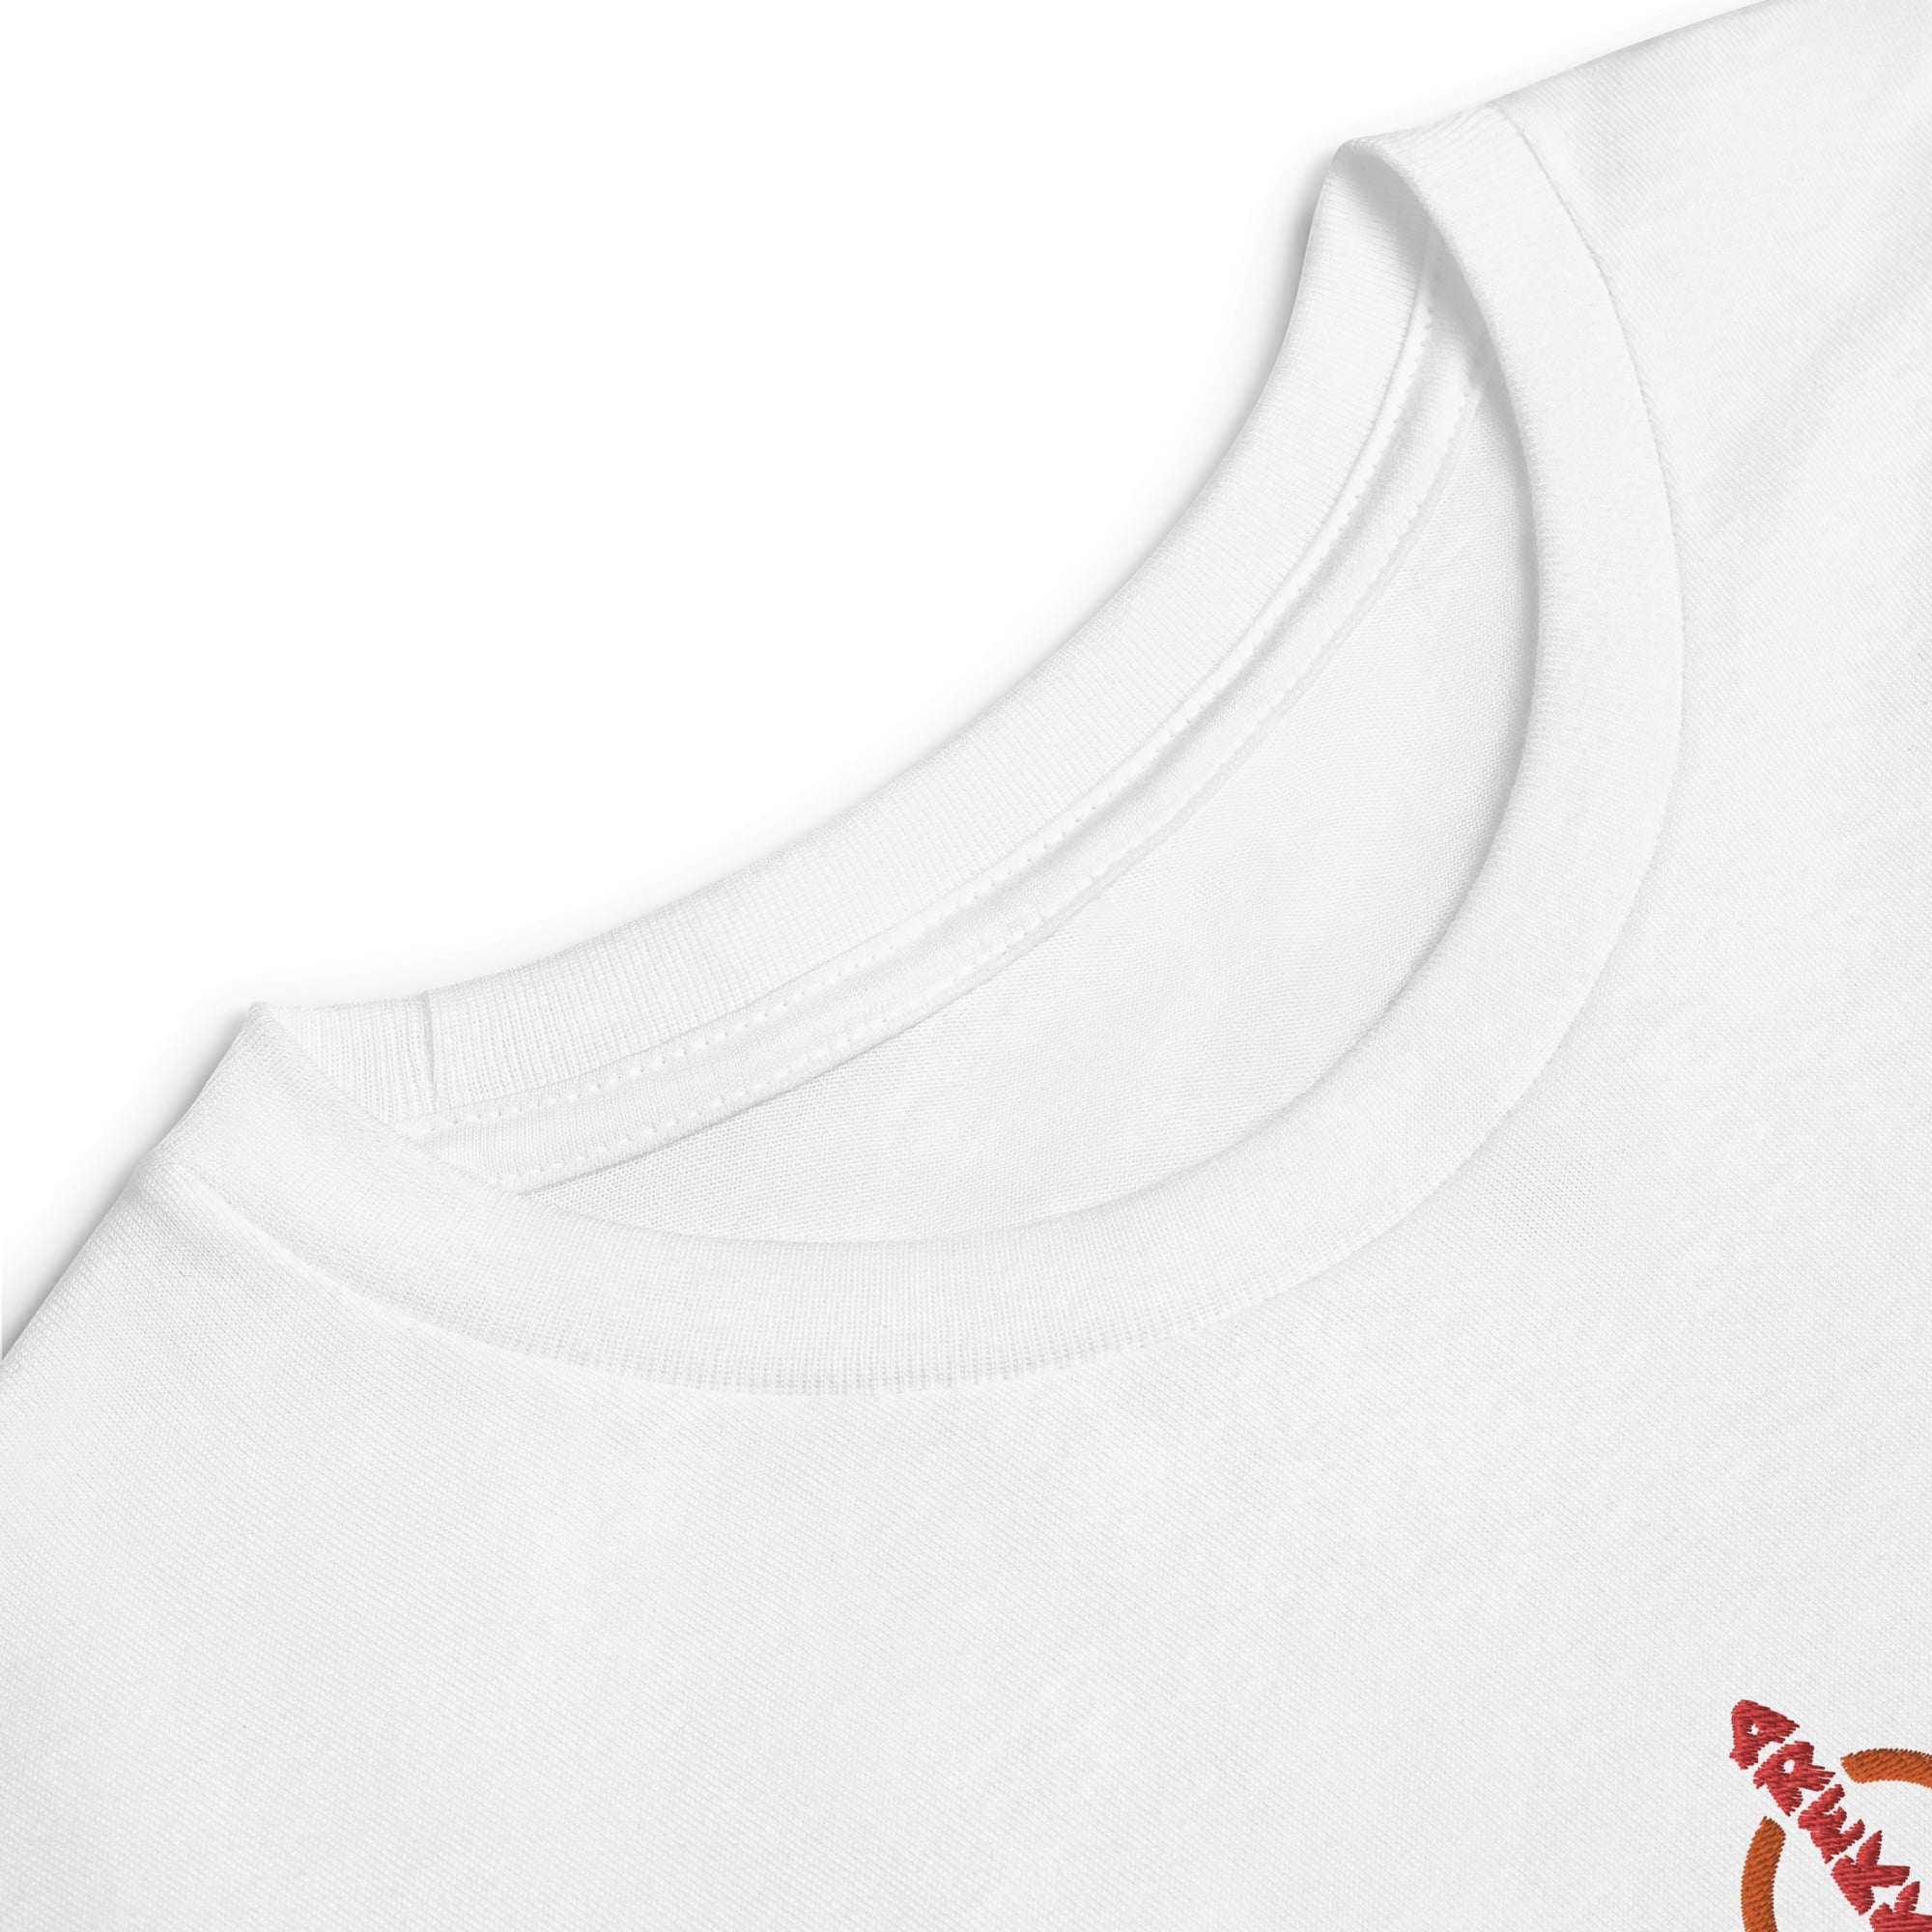 Unisex Youth Long Sleeve Shirt-18